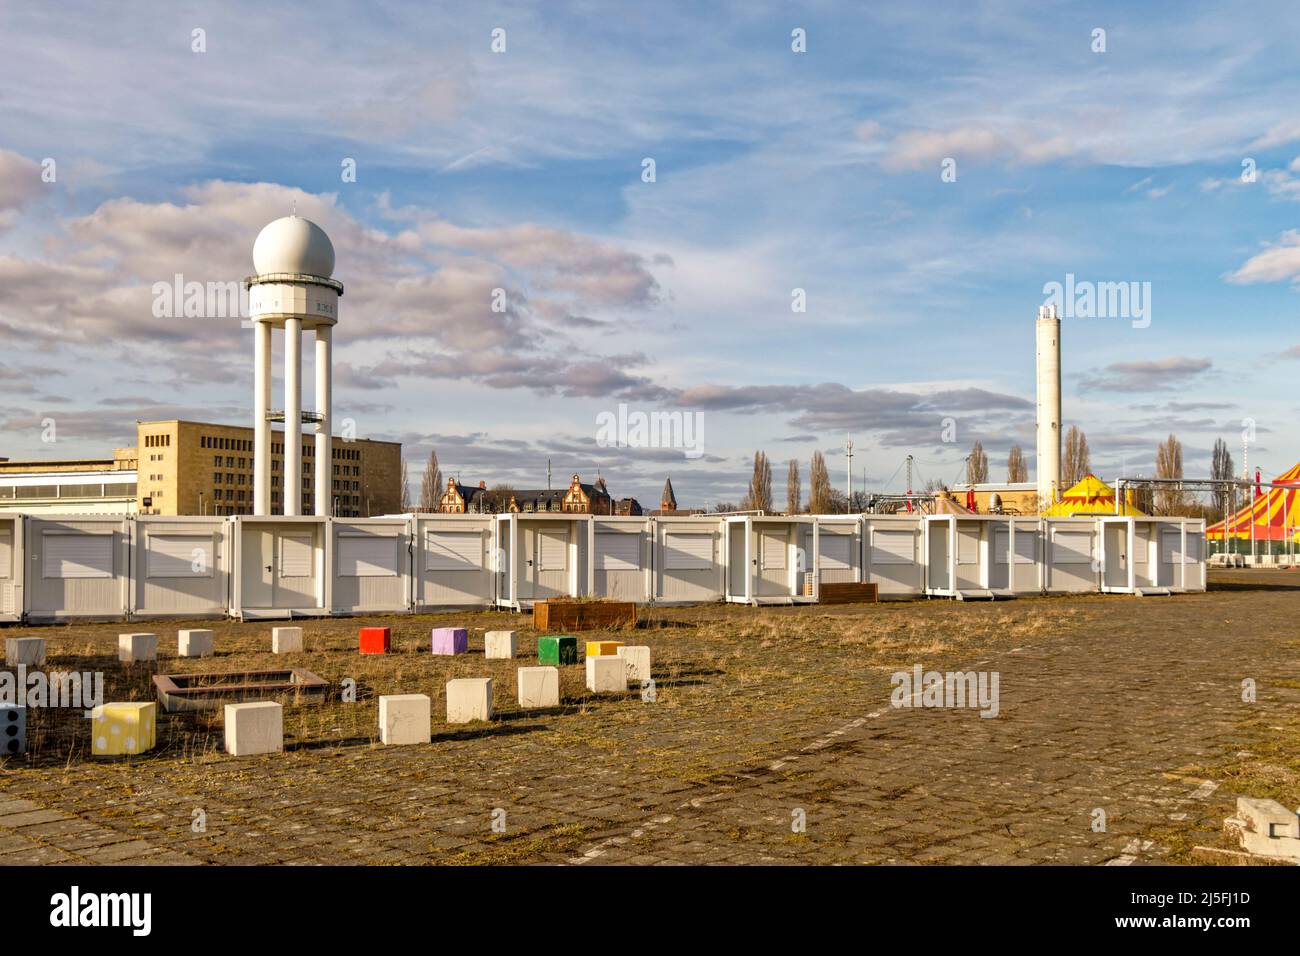 Tempelhofer Feld, Radarturm des ehemaligen Flughafen Berlin-Tempelhof, leerstehende Wohncontainer für Asylanten,  Berlin, Deutschland, Europa Stock Photo